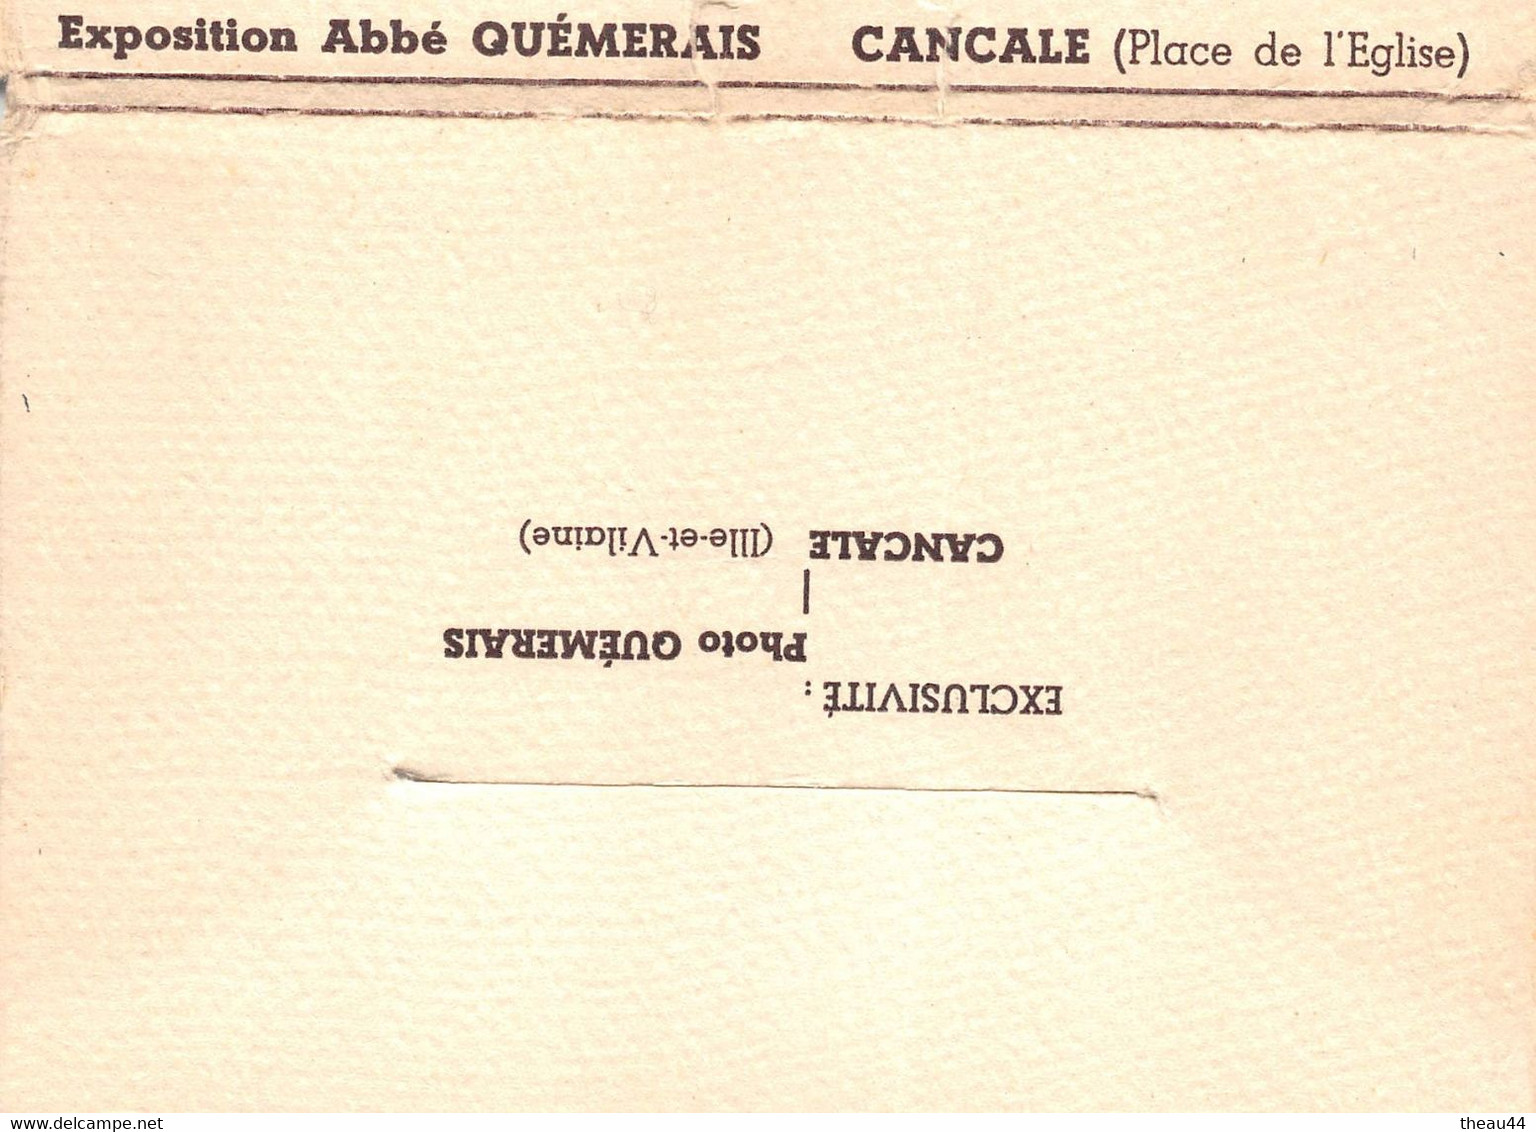 CANCALE - Lot de 10 Cartes et sa Pochette - Mr L'Abbé "QUEMERAIS" de ROTHENEUF ,auteur des "BOIS SCULPTES"